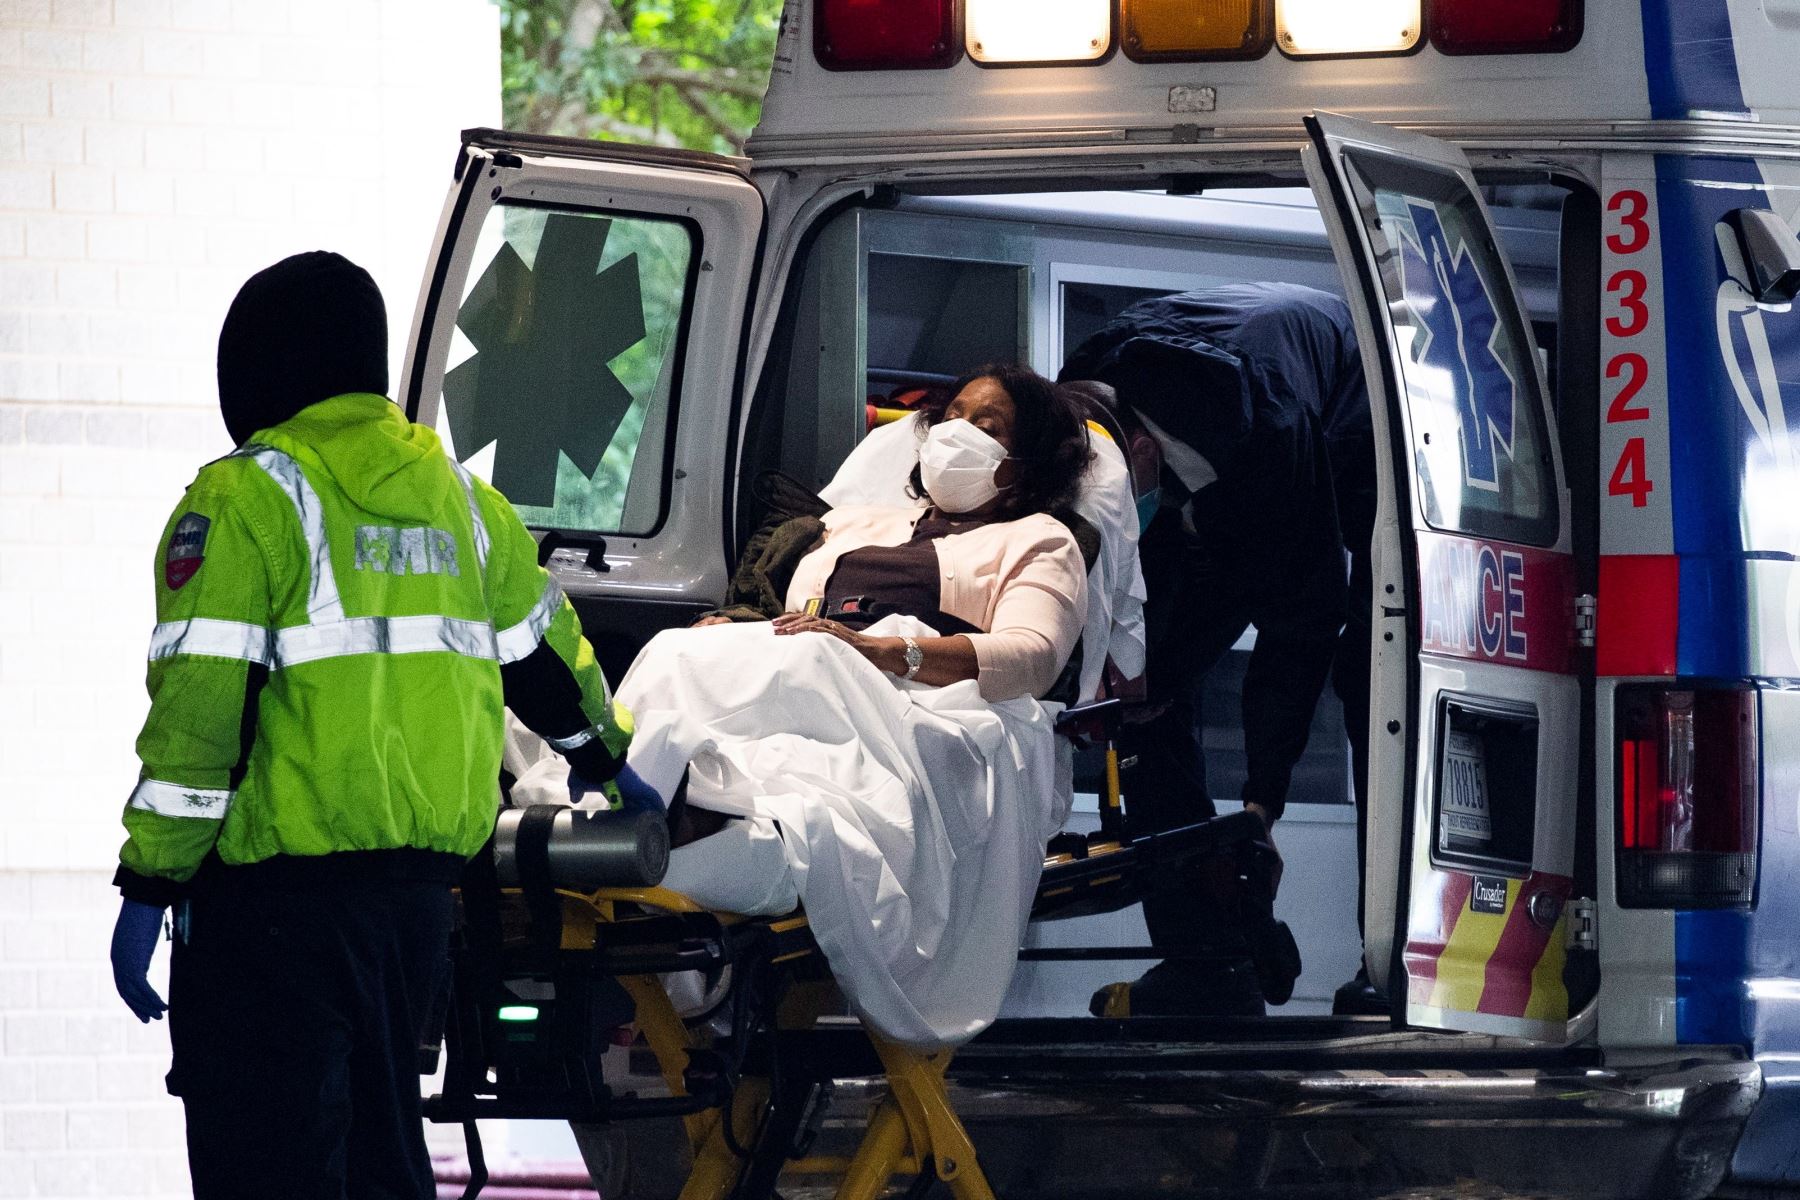 Los técnicos médicos de emergencia transportan a un paciente desde una ambulancia al llegar a la bahía de emergencia en el Hospital de la Universidad George Washington en Washington, DC, EE. UU. Foto: EFE